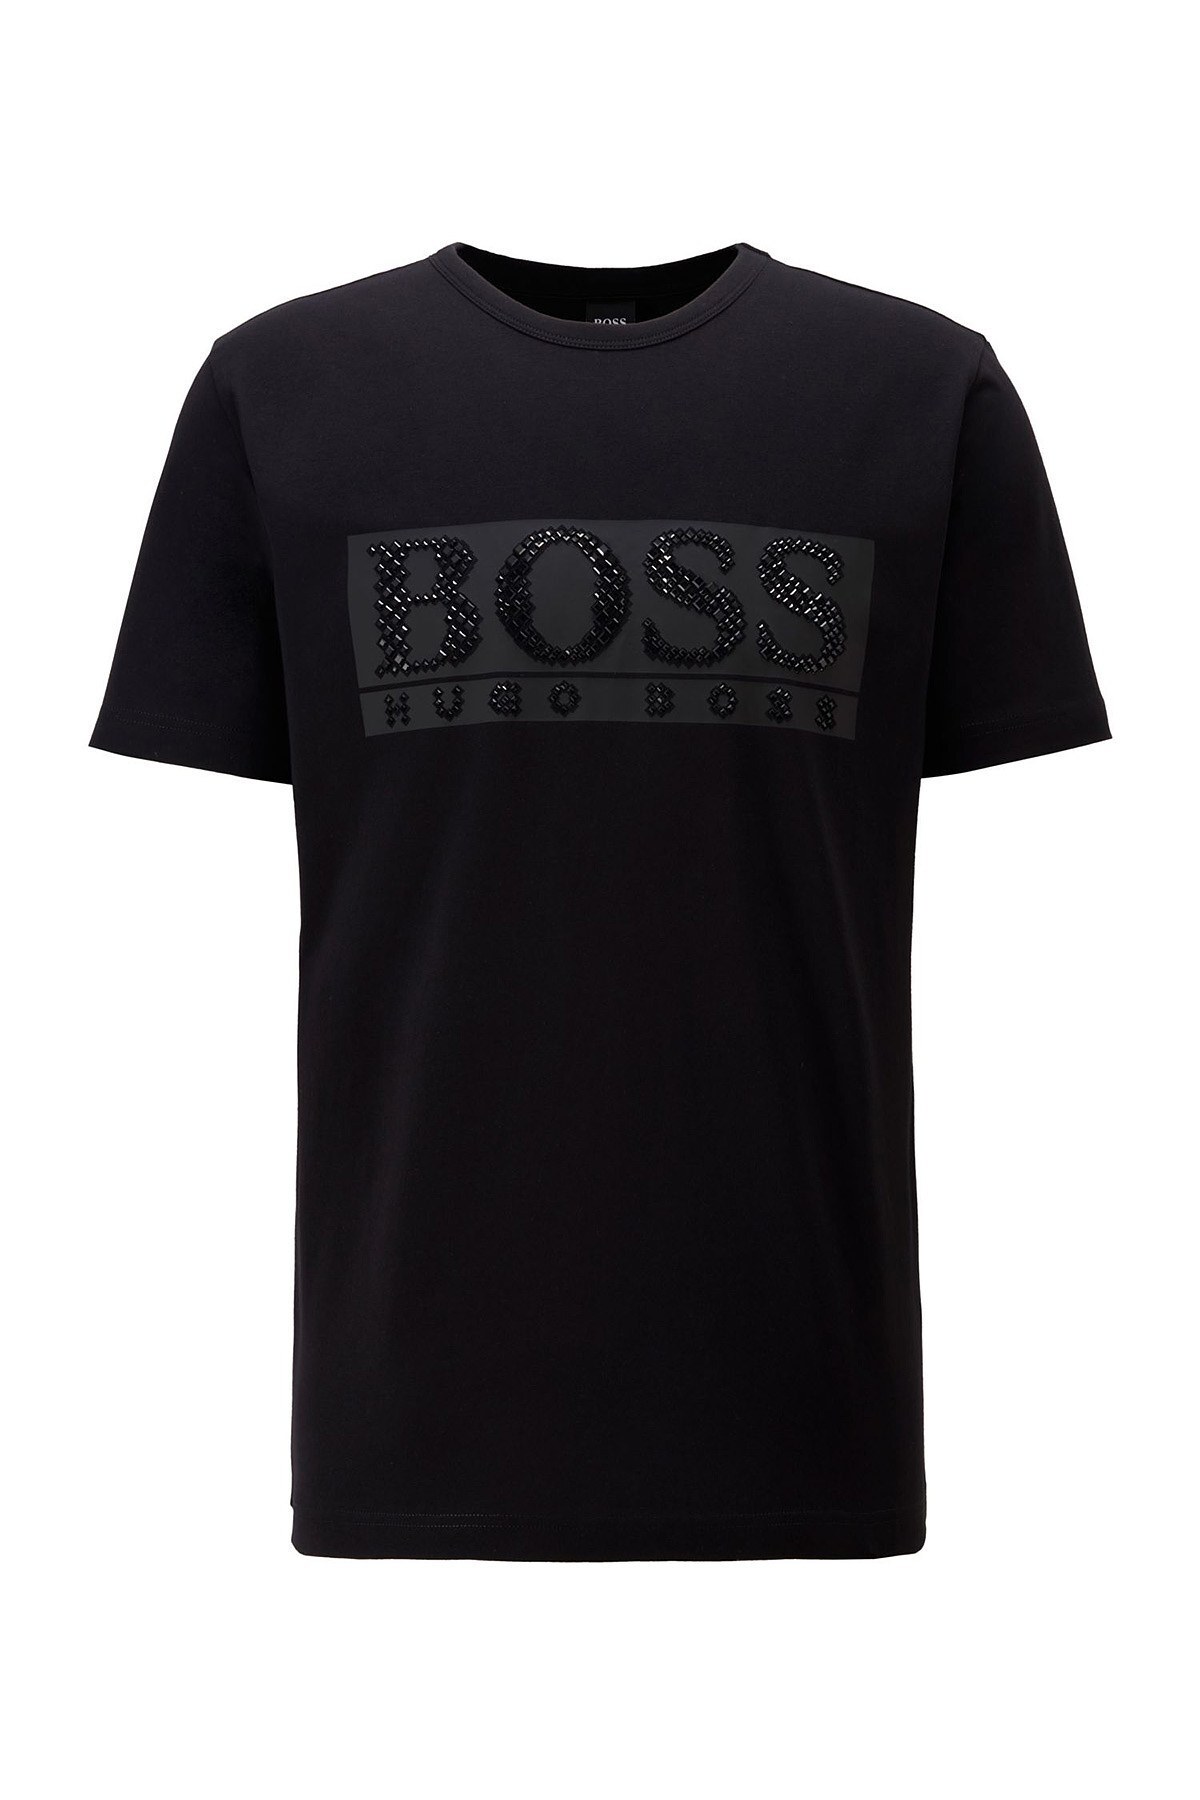 Hugo Boss Taşlı Logo Detaylı Bisiklet Yaka Erkek T Shirt 50443712 001 SİYAH